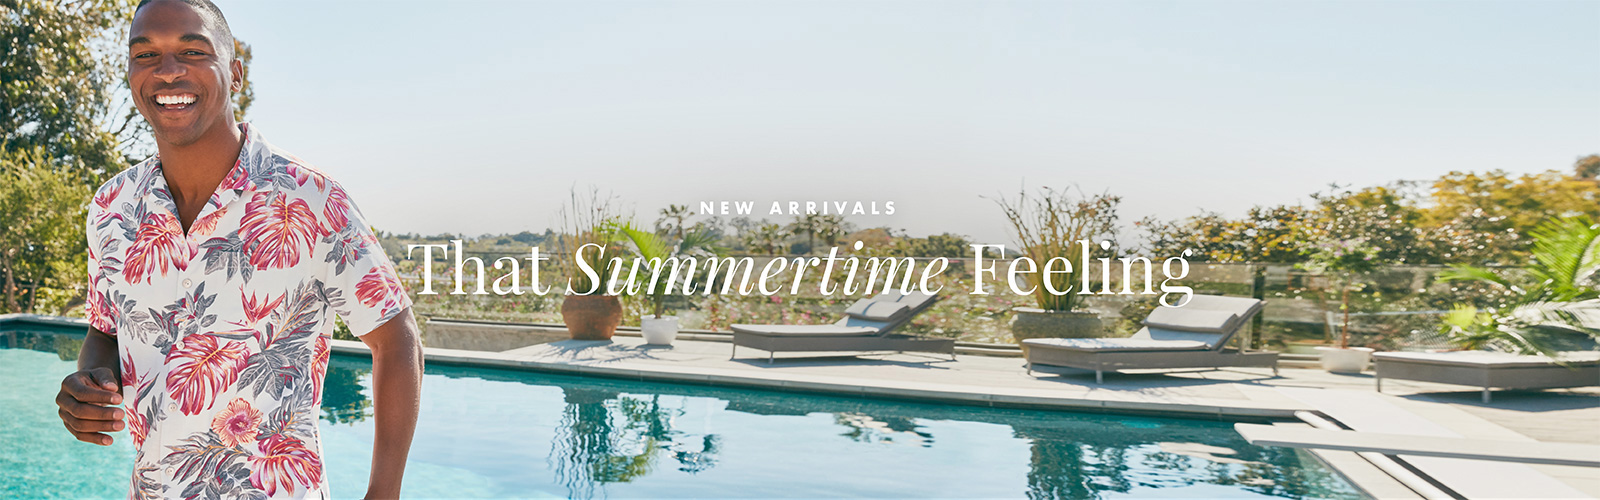 New Arrivals - That Summertime Feeling